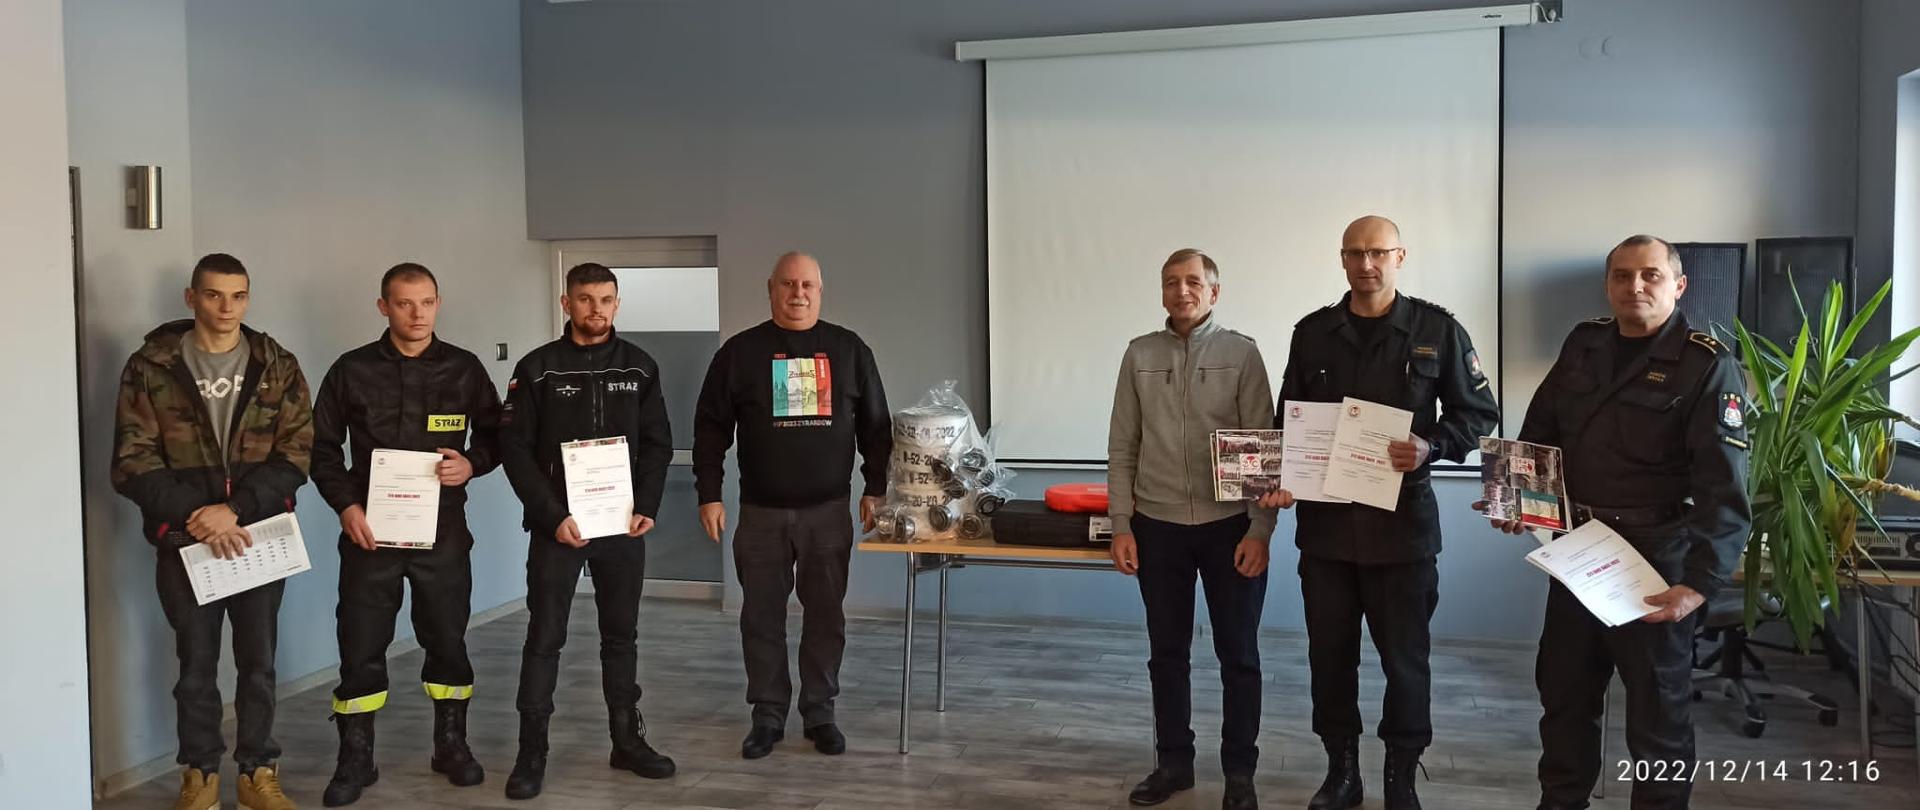 Przedstawiciele Żyrardowskiego Towarzystwa Cyklistów oraz funkcjonariusze KP PSP w Żyrardowie i strażacy ochotnicy pozują do wspólnego zdjęcia